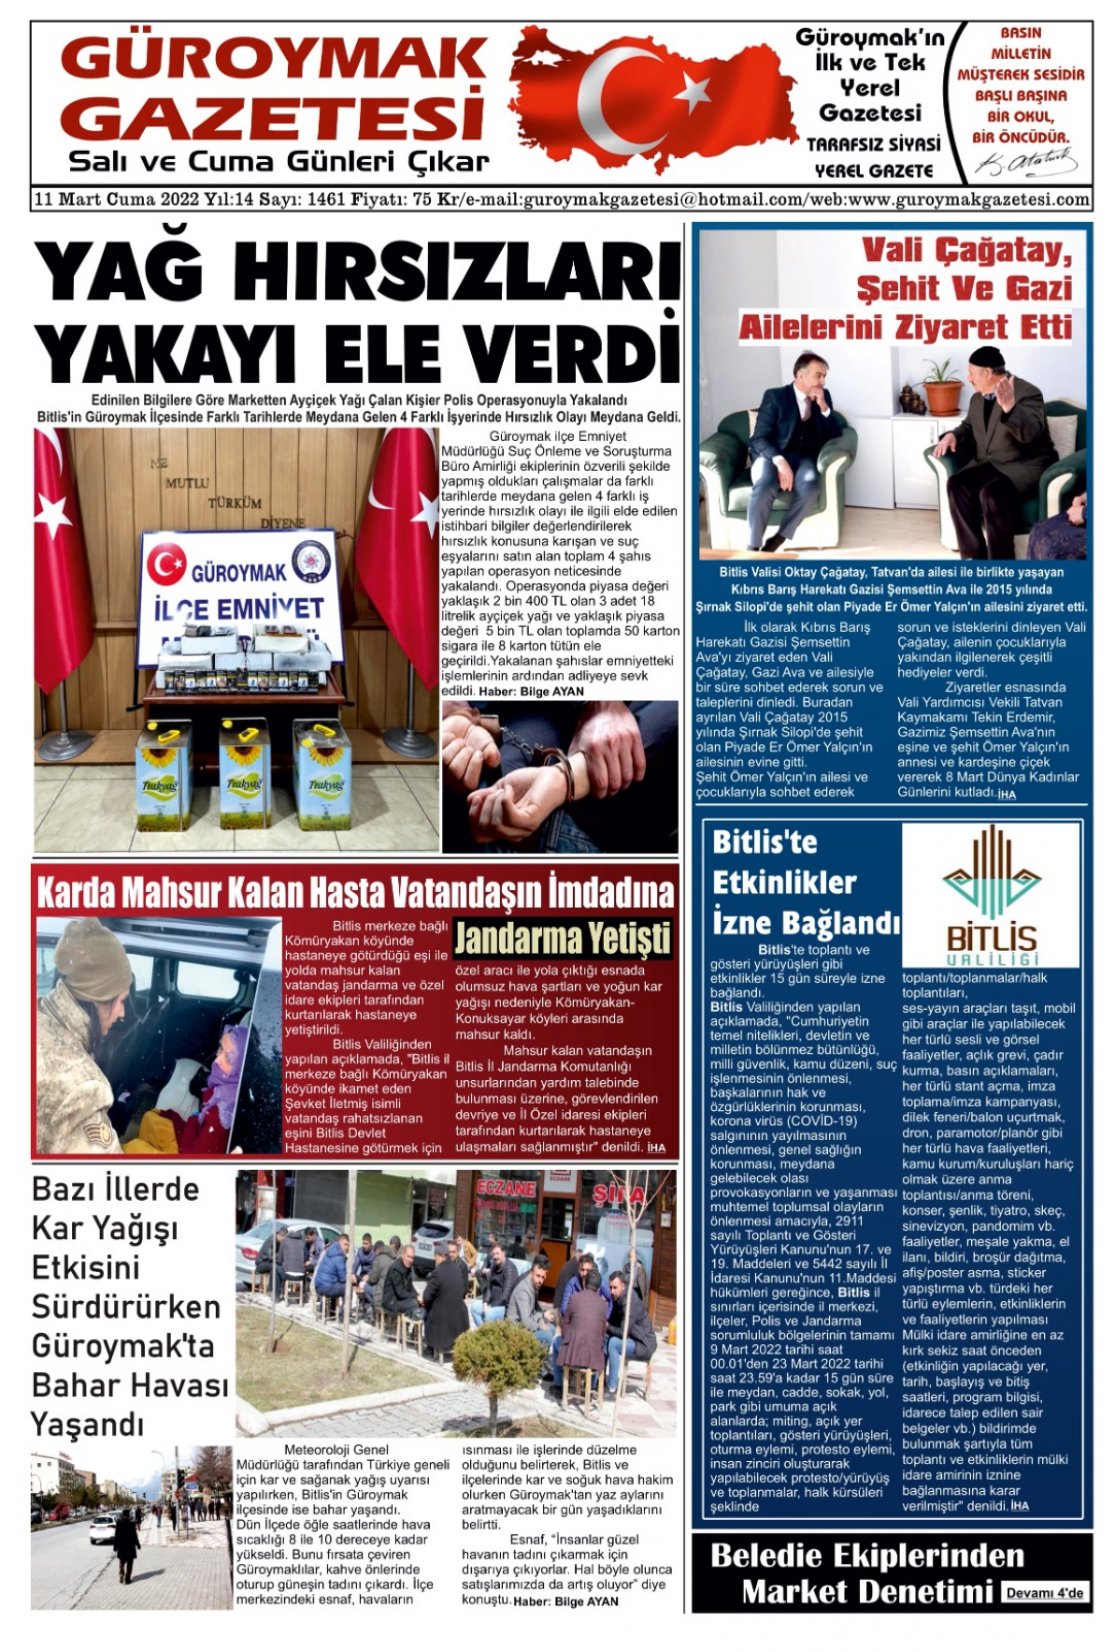 Güroymak Gazetesi WhatsApp Image 2022-03-10 at 22.20.06.jpeg Sayılı Gazete Küpürü